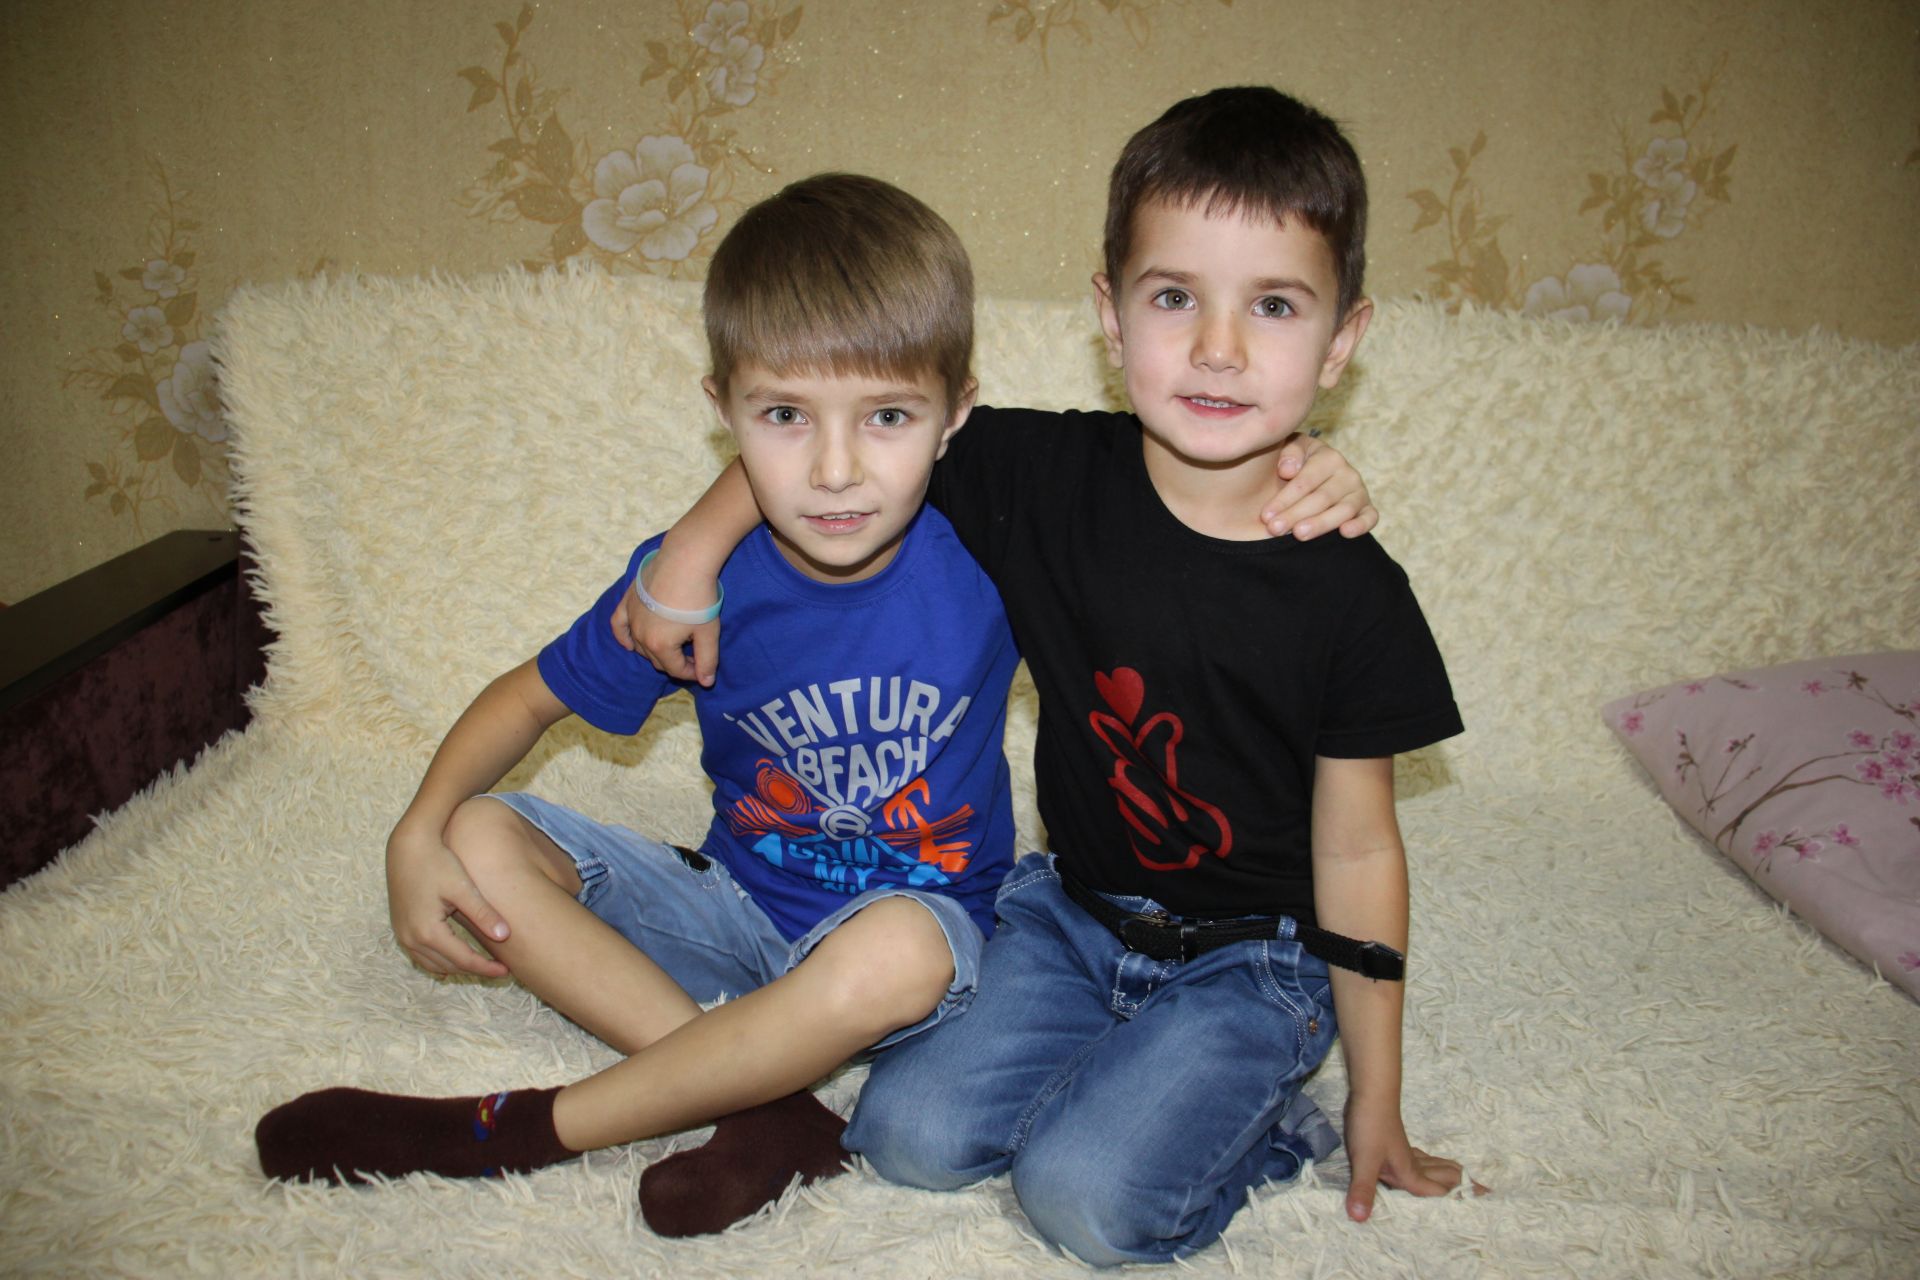 Алькеевский район: “Все четверо детей желанные, долгожданные”, – говорят Ильдар и Лейсан Гилязовы из села Ахметьево